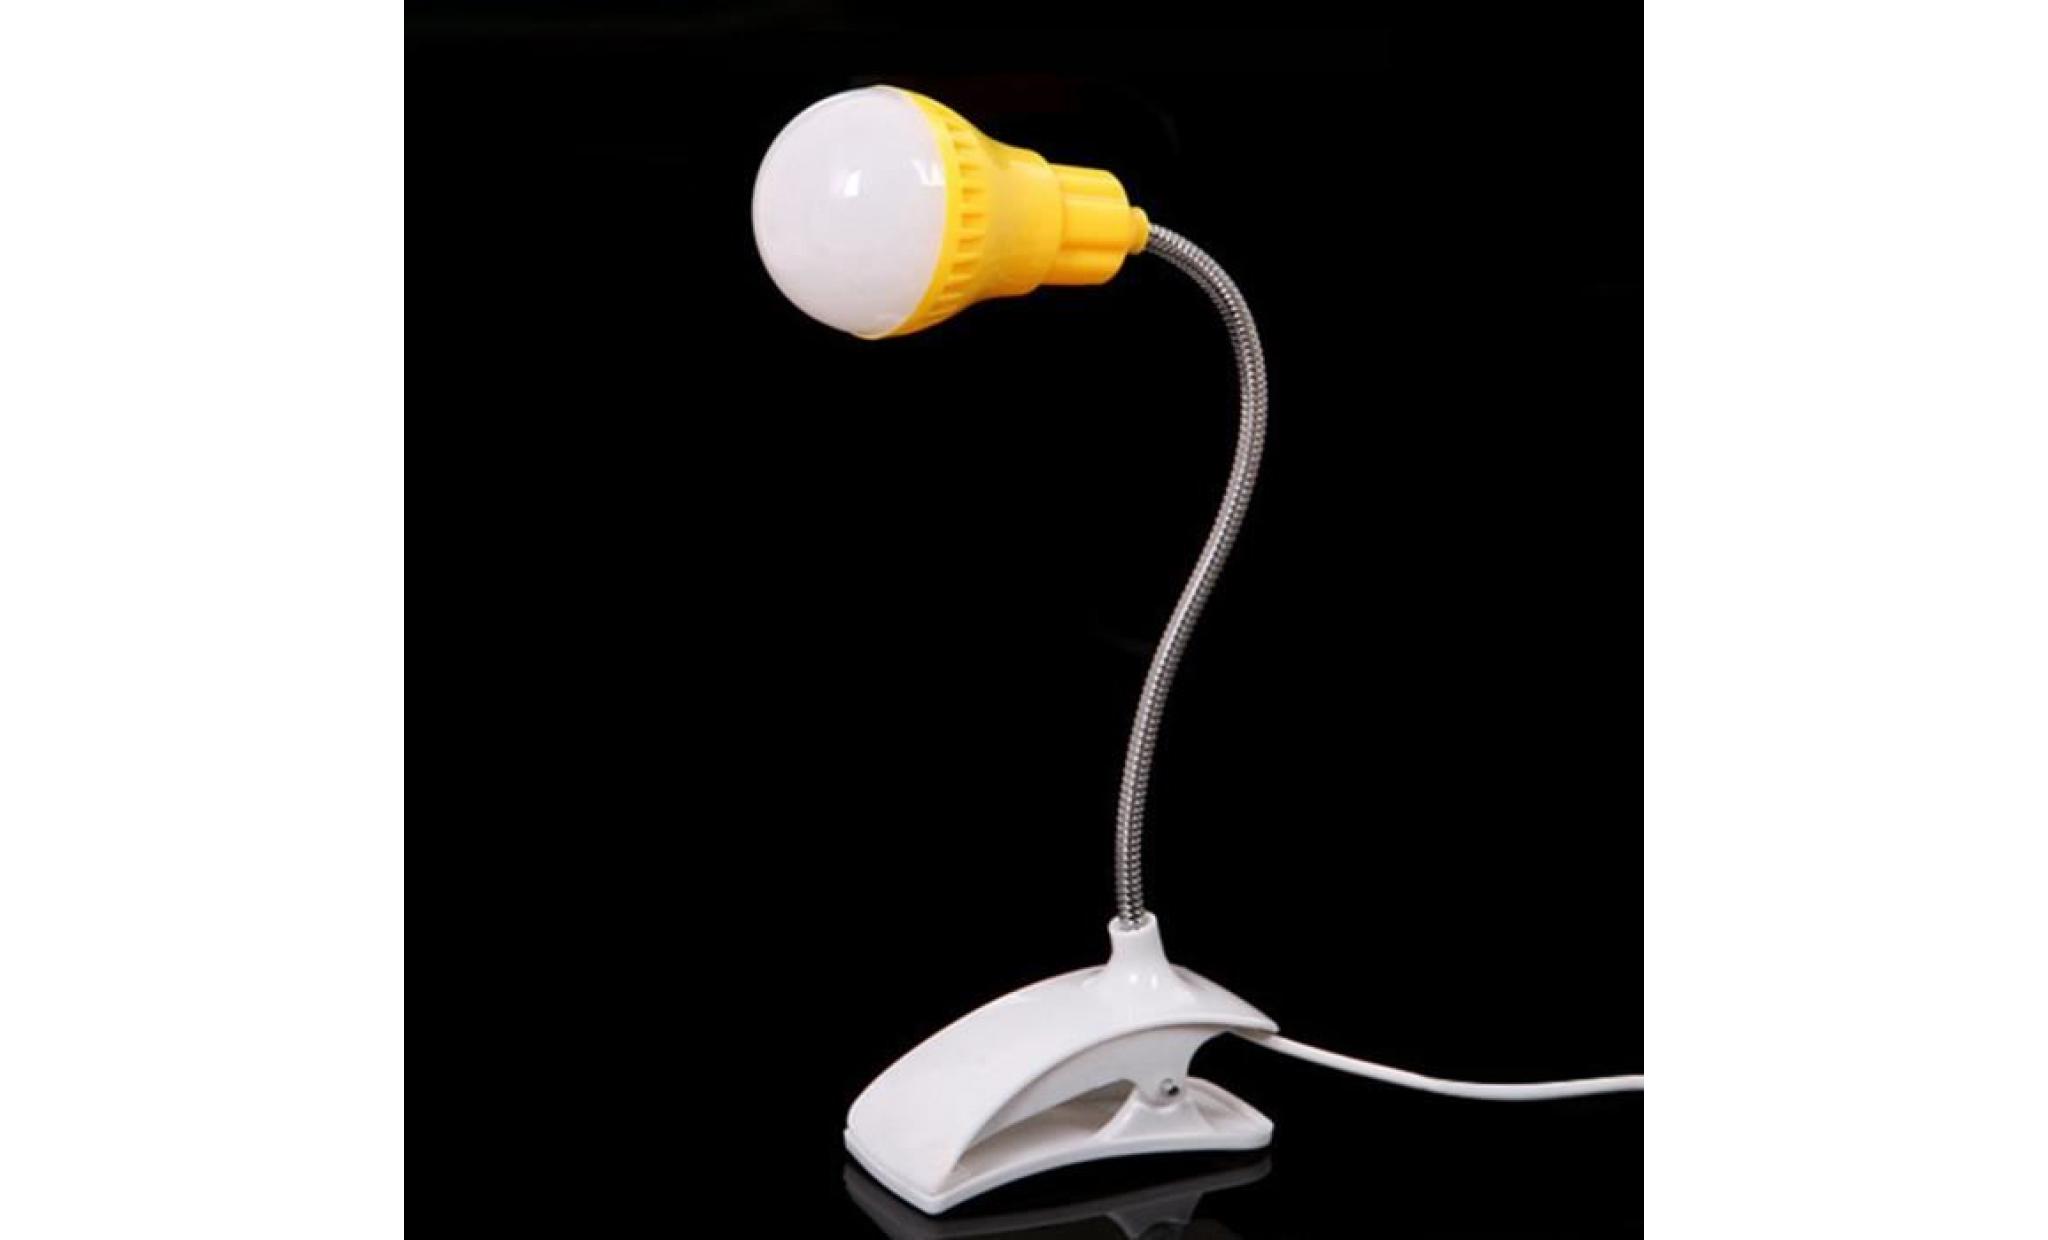 nouveau support de table lampe usb du personnel étudiant de lecture table bureau lampe gn    dx2889 pas cher